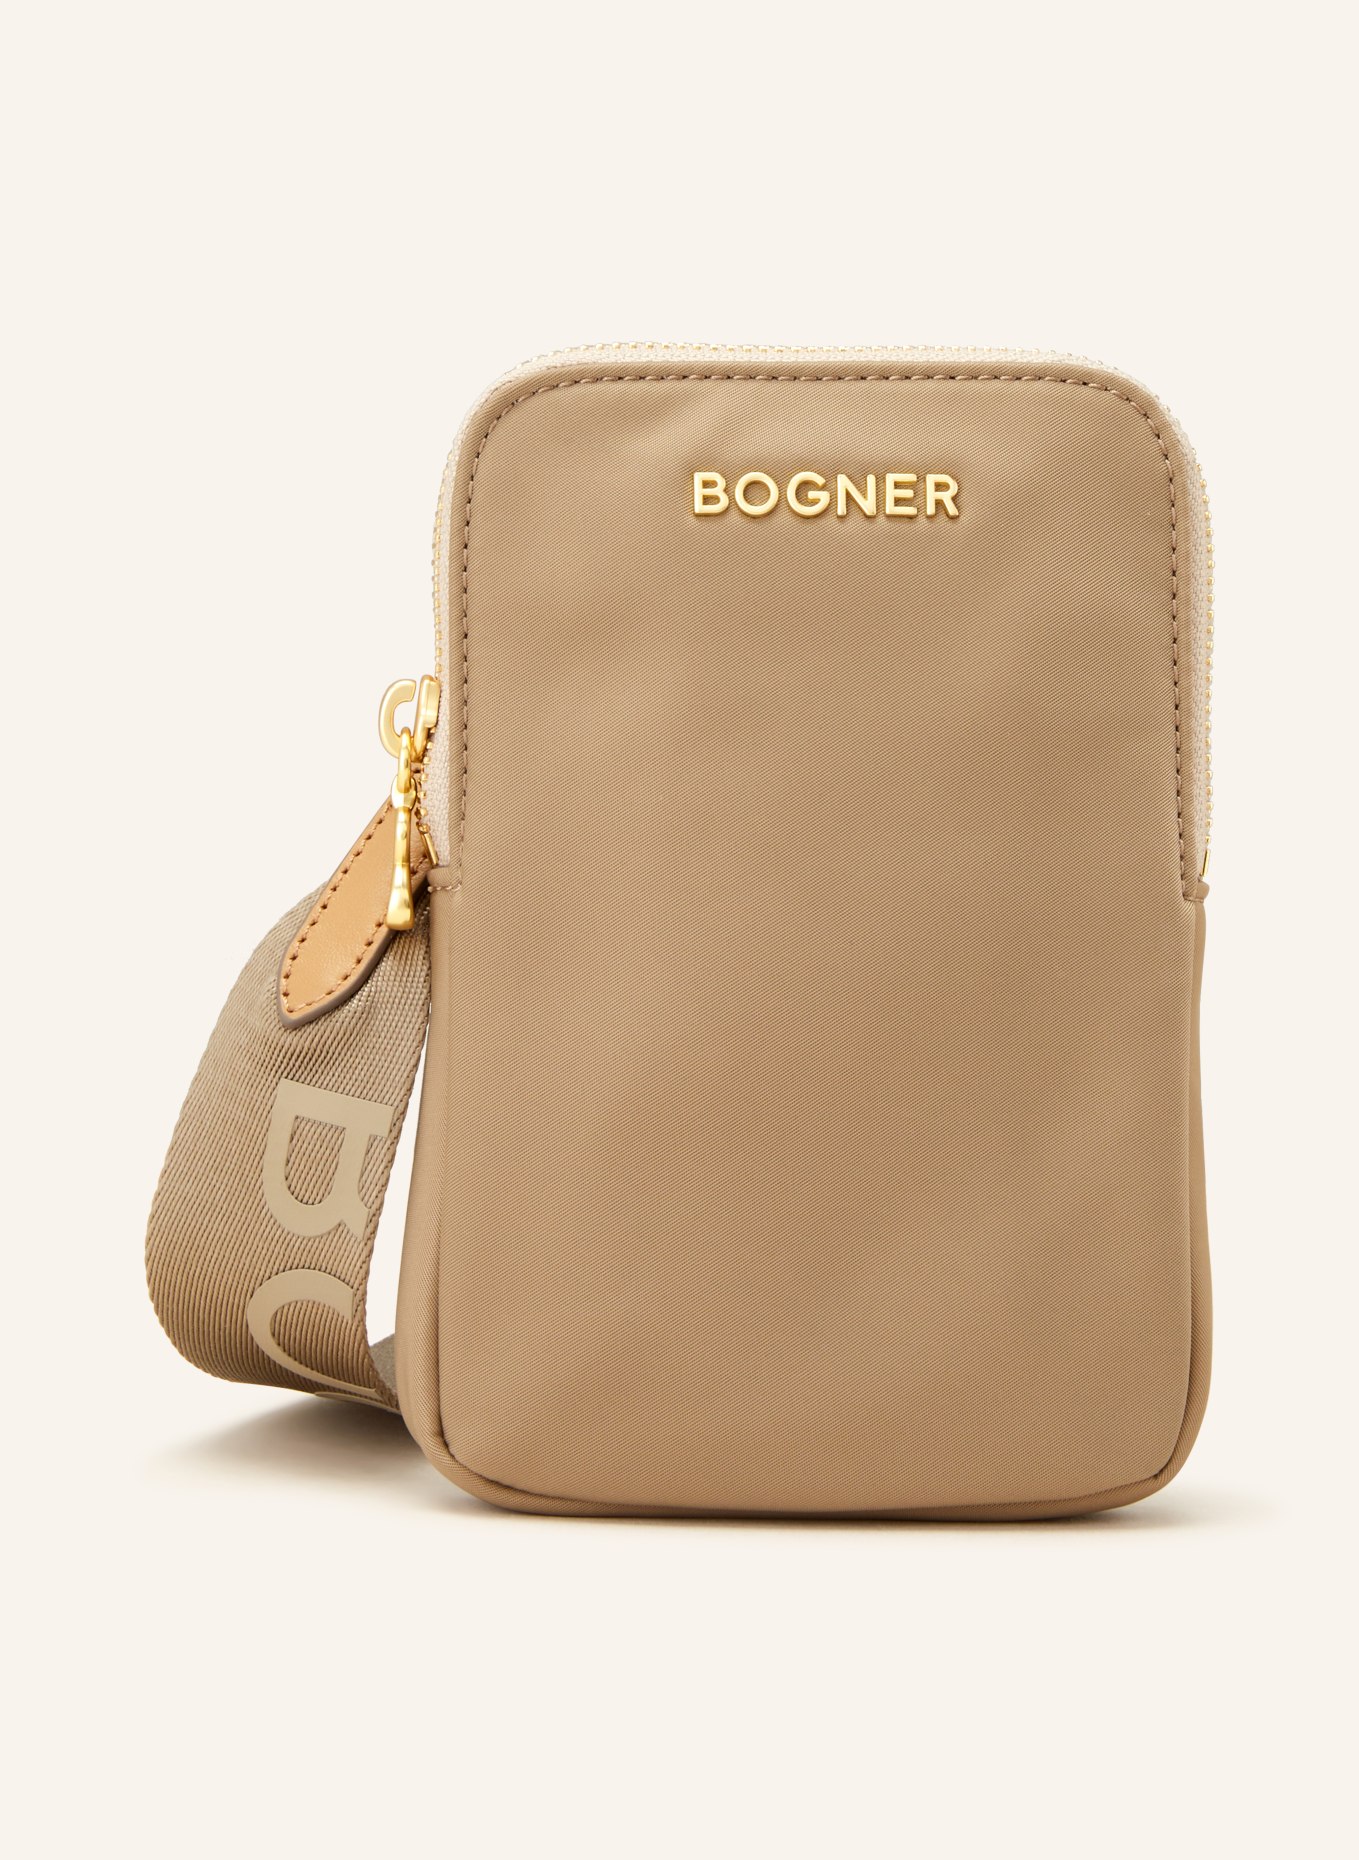 BOGNER Smartphone bag KLOSTERS NEVE JOHANNA, Color: CAMEL (Image 1)